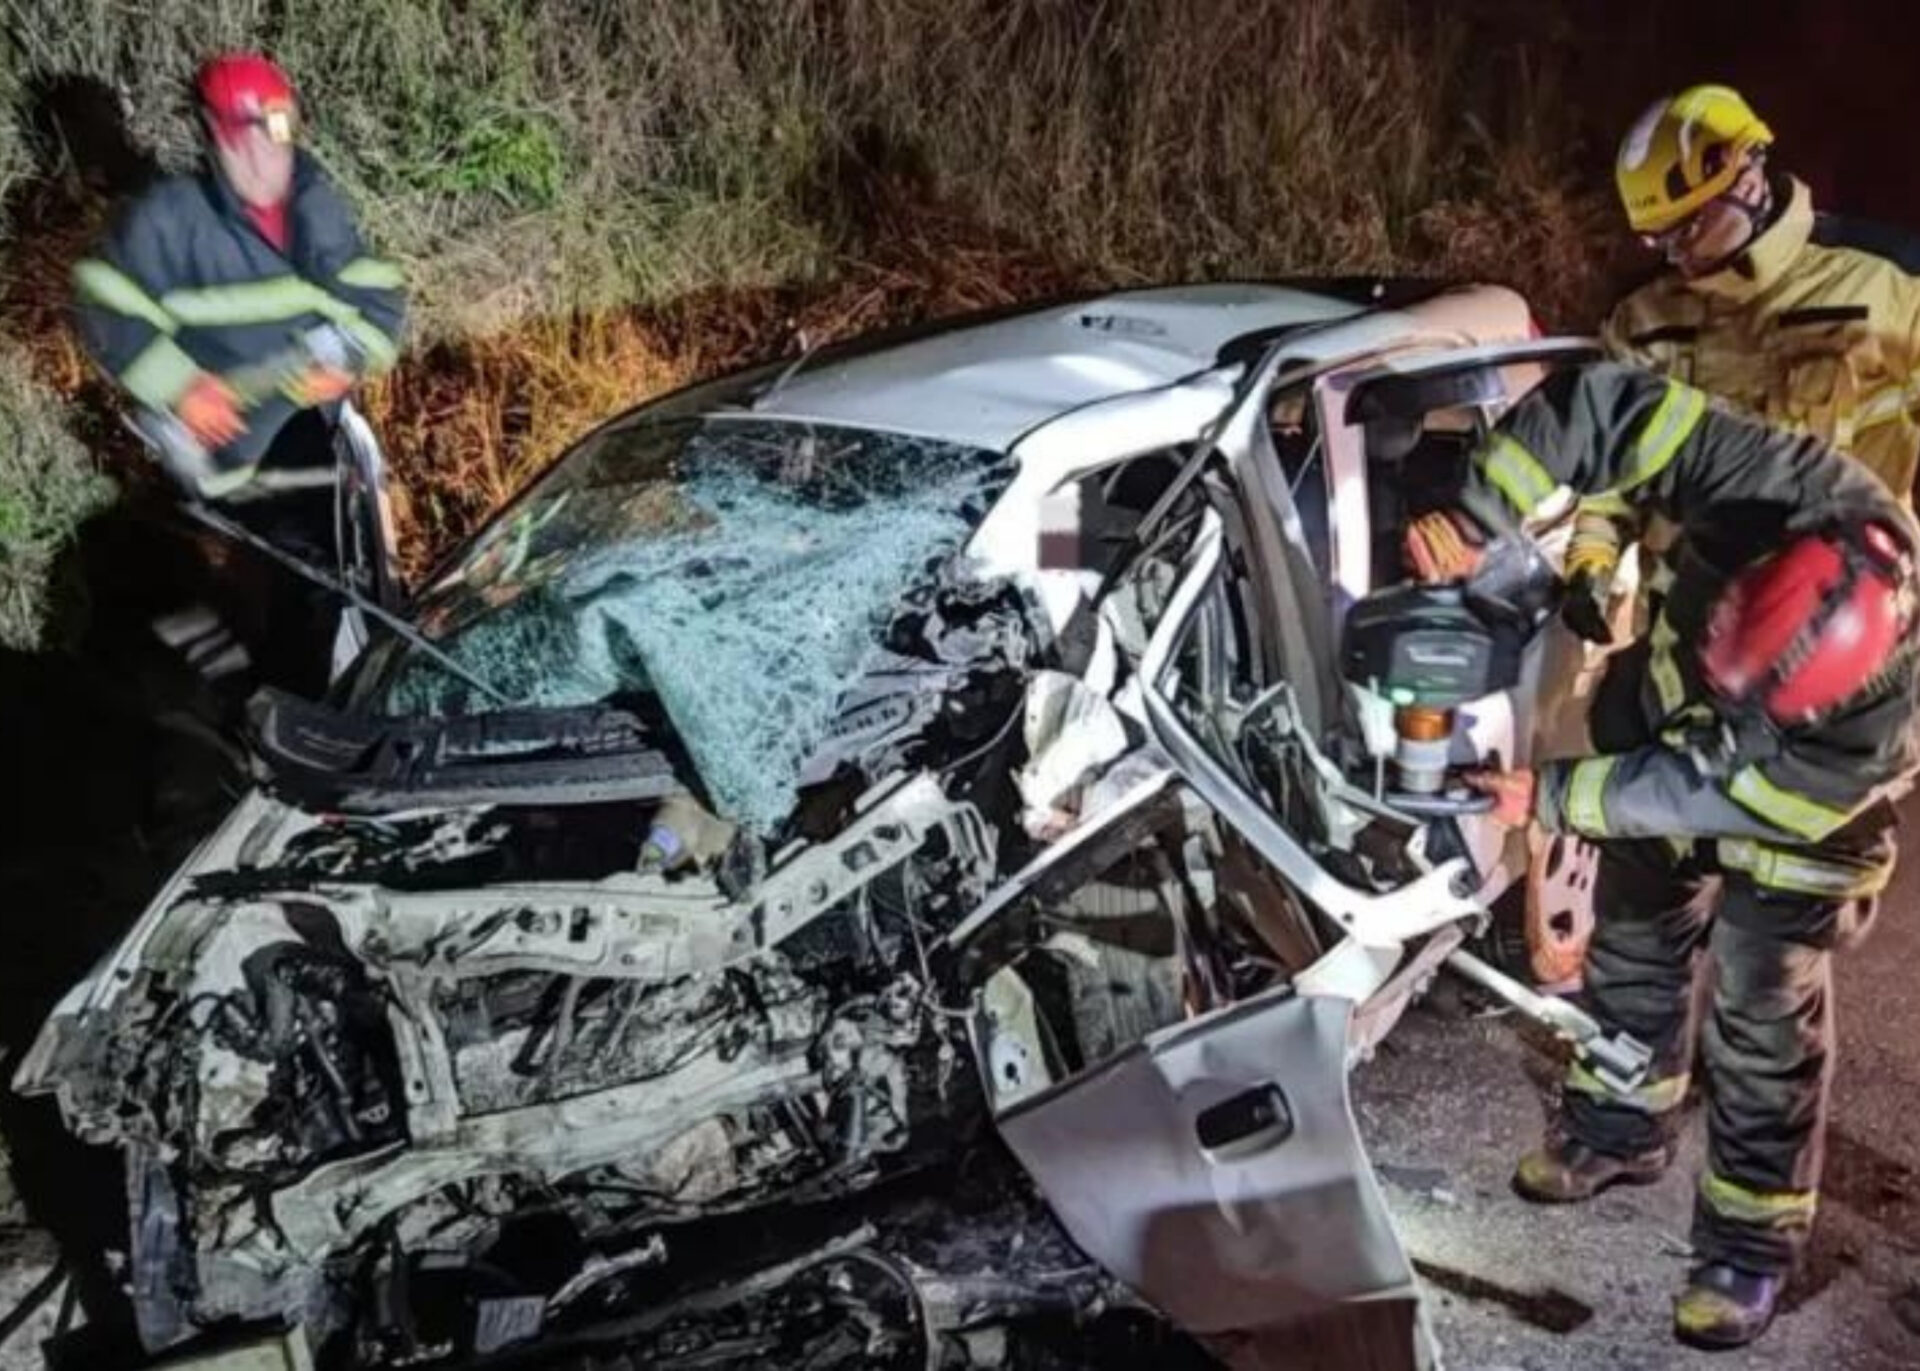 Condutor sem habilitação é suspeito de ter causado o acidente que matou 7 pessoas em Ouro Preto, diz Polícia Militar